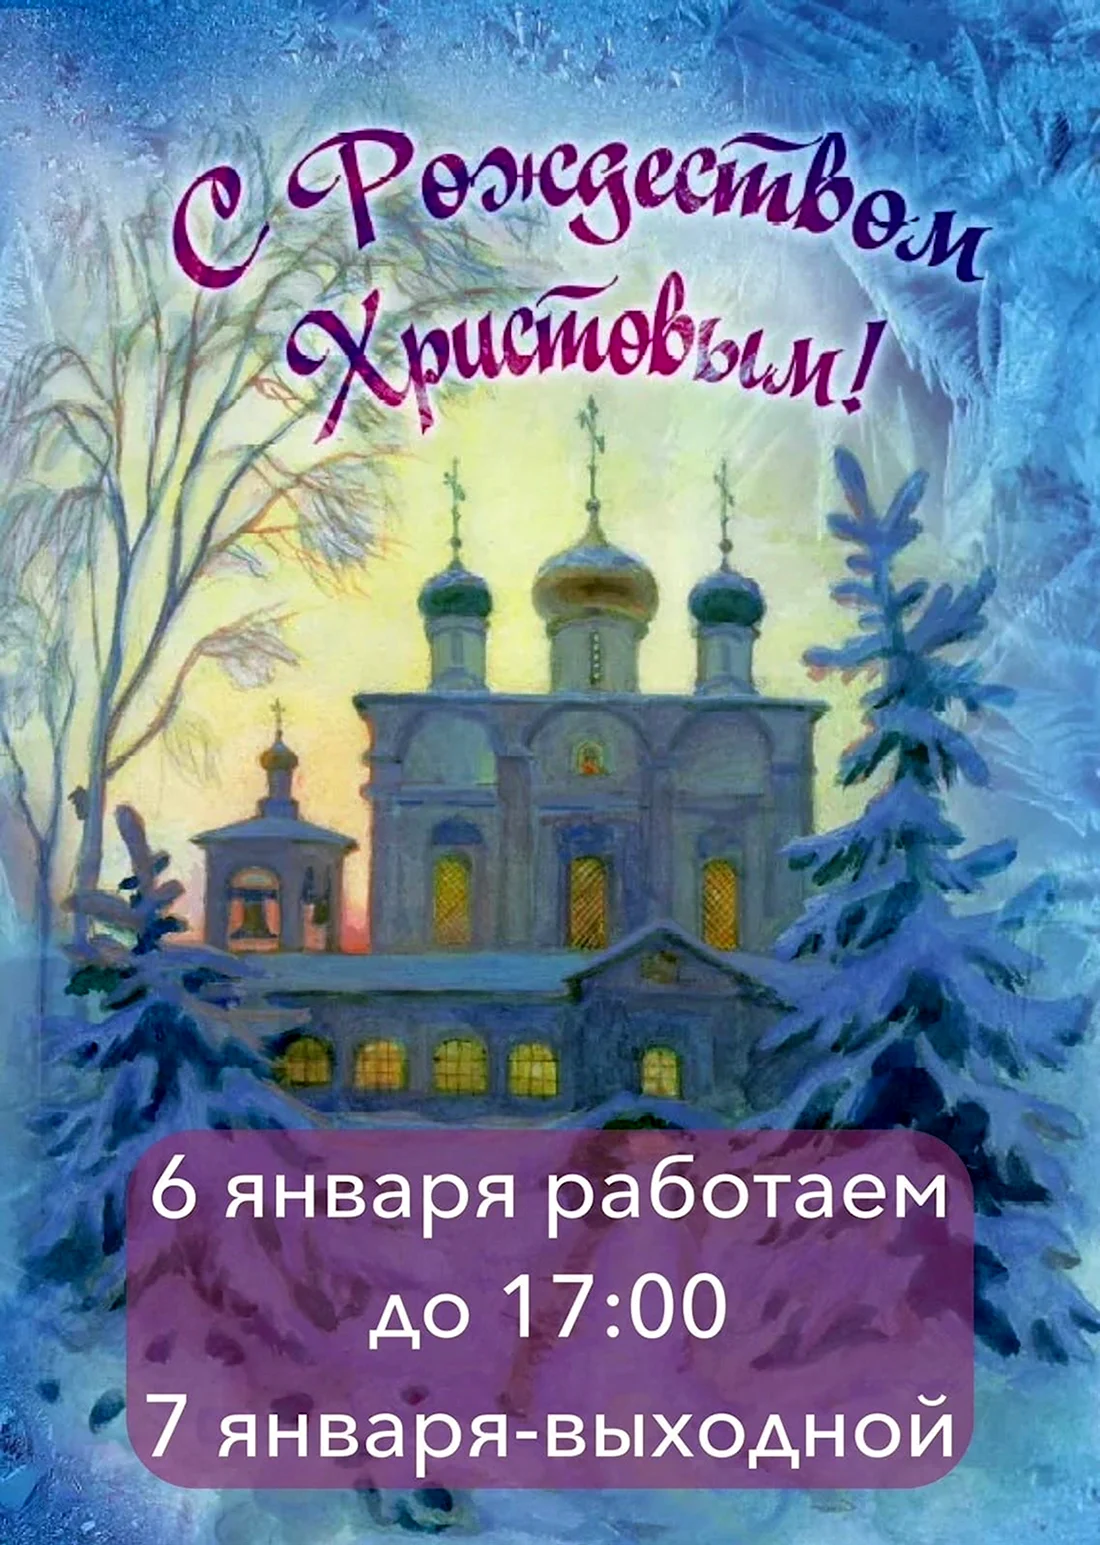 Сретенский монастырь Рождество Христово. Открытка на праздник